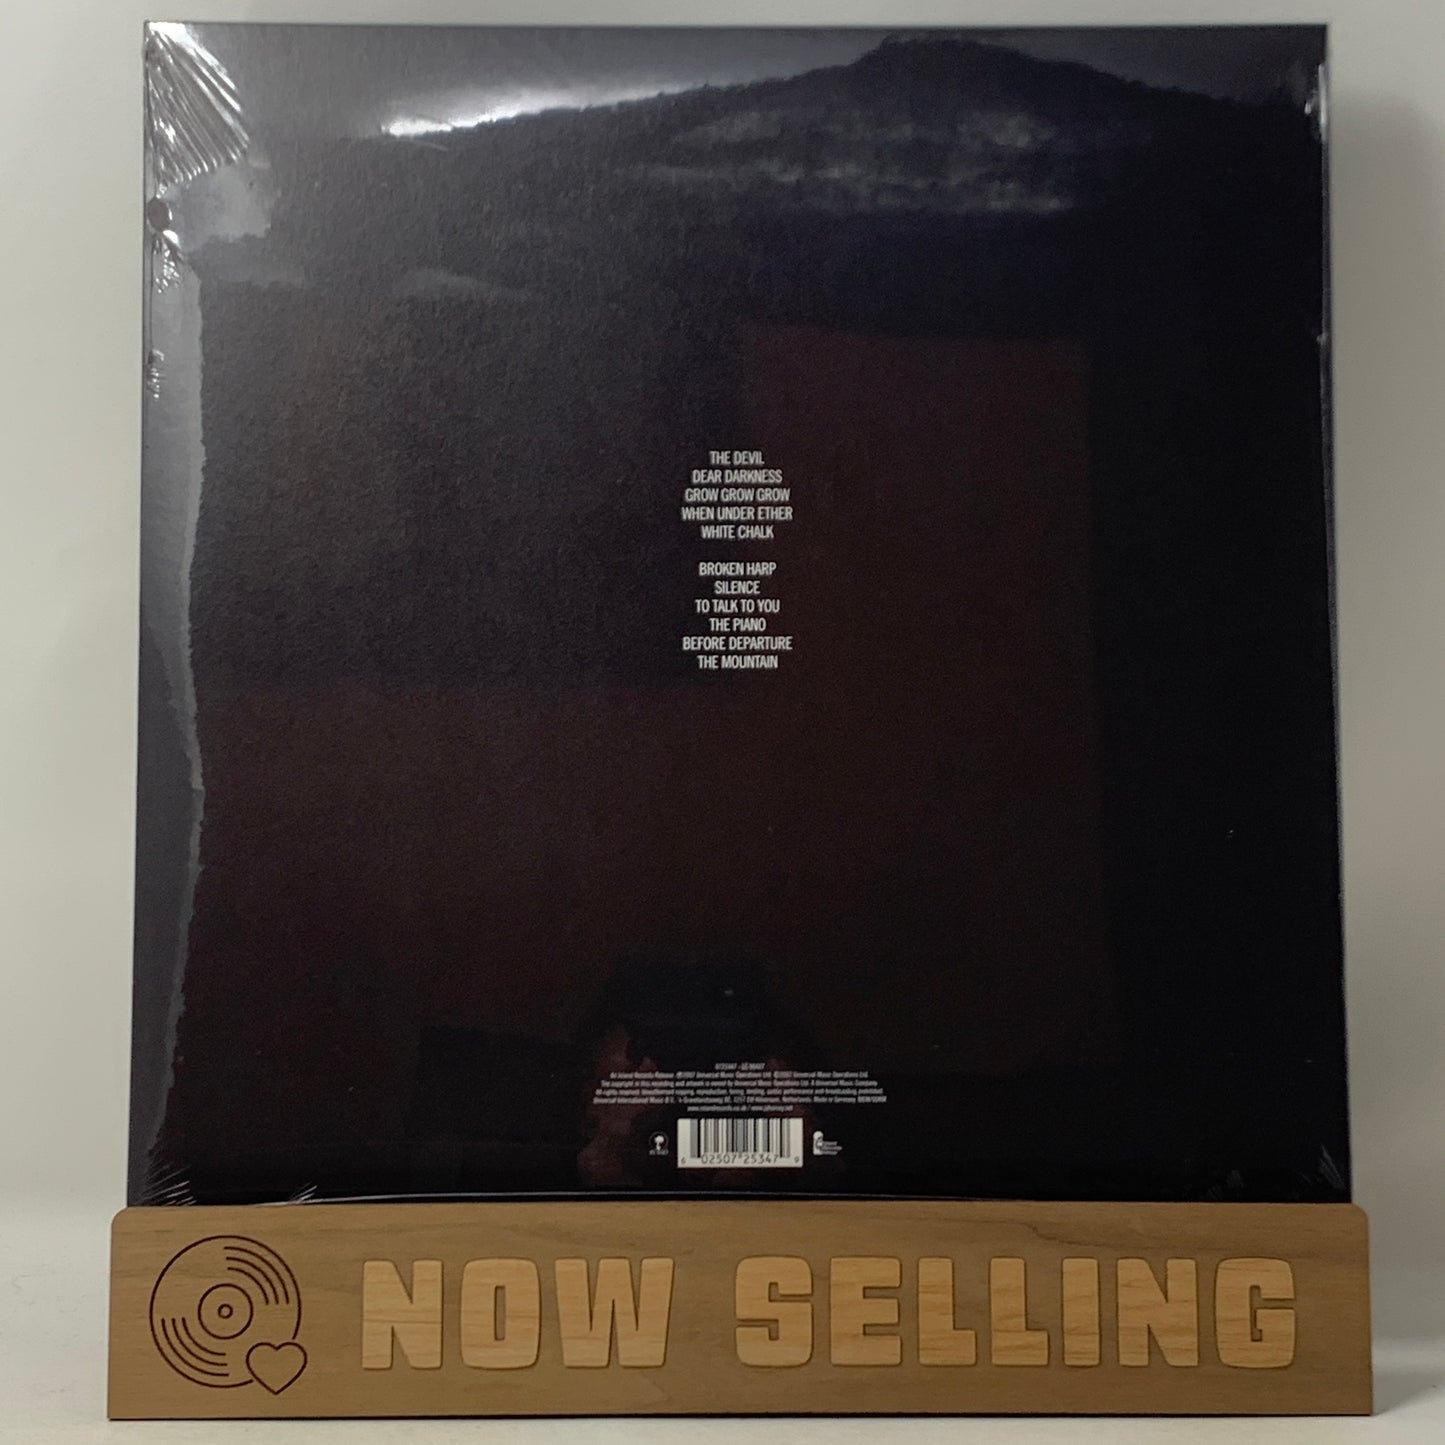 PJ Harvey - White Chalk Vinyl LP Reissue SEALED